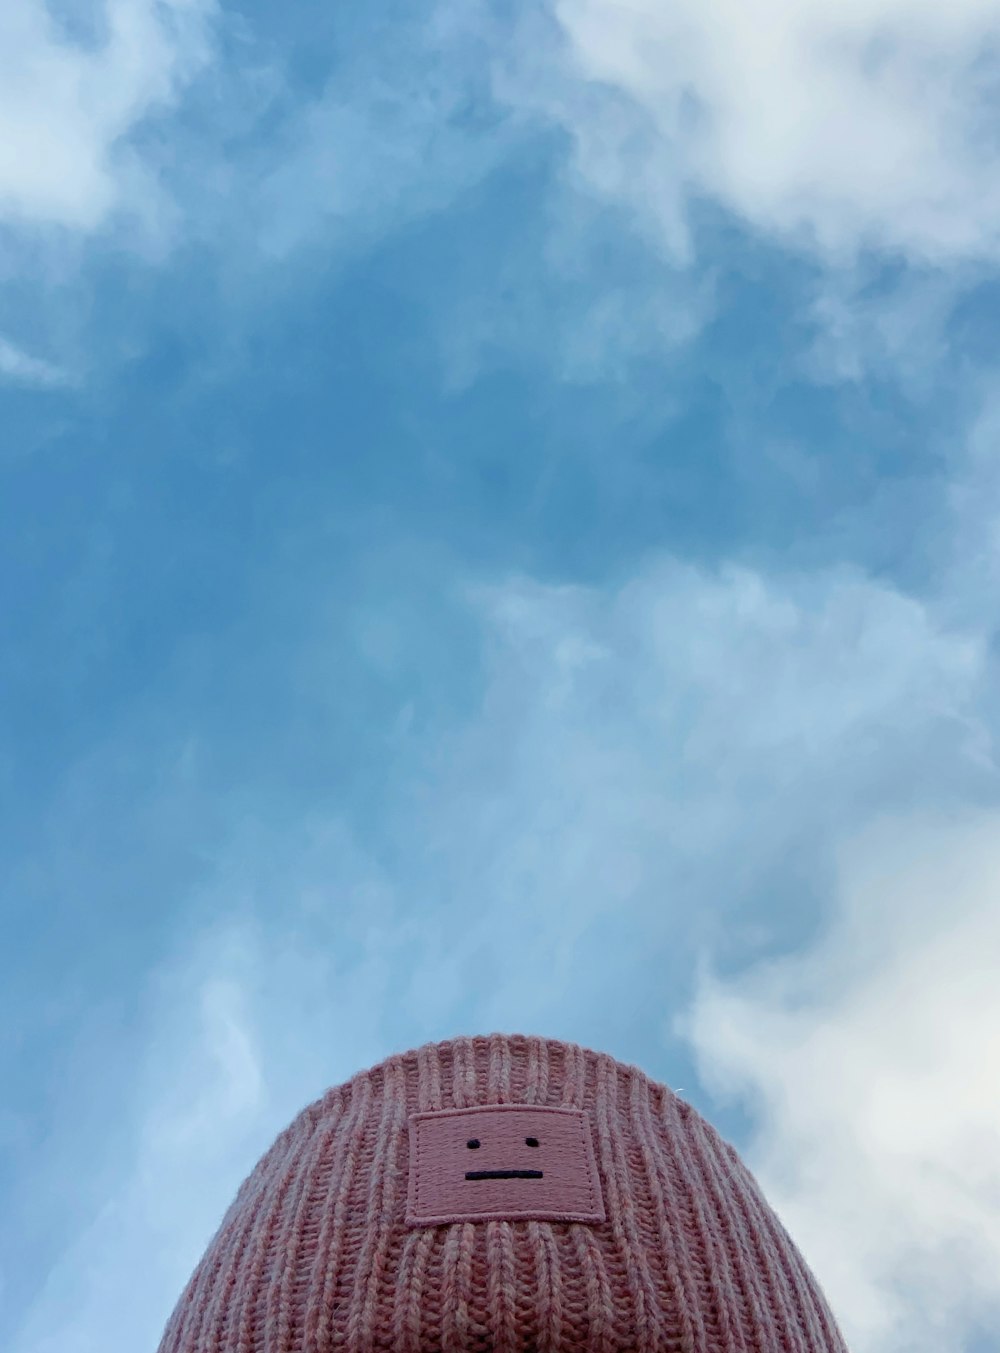 Edificio a cupola rosa sotto il cielo blu